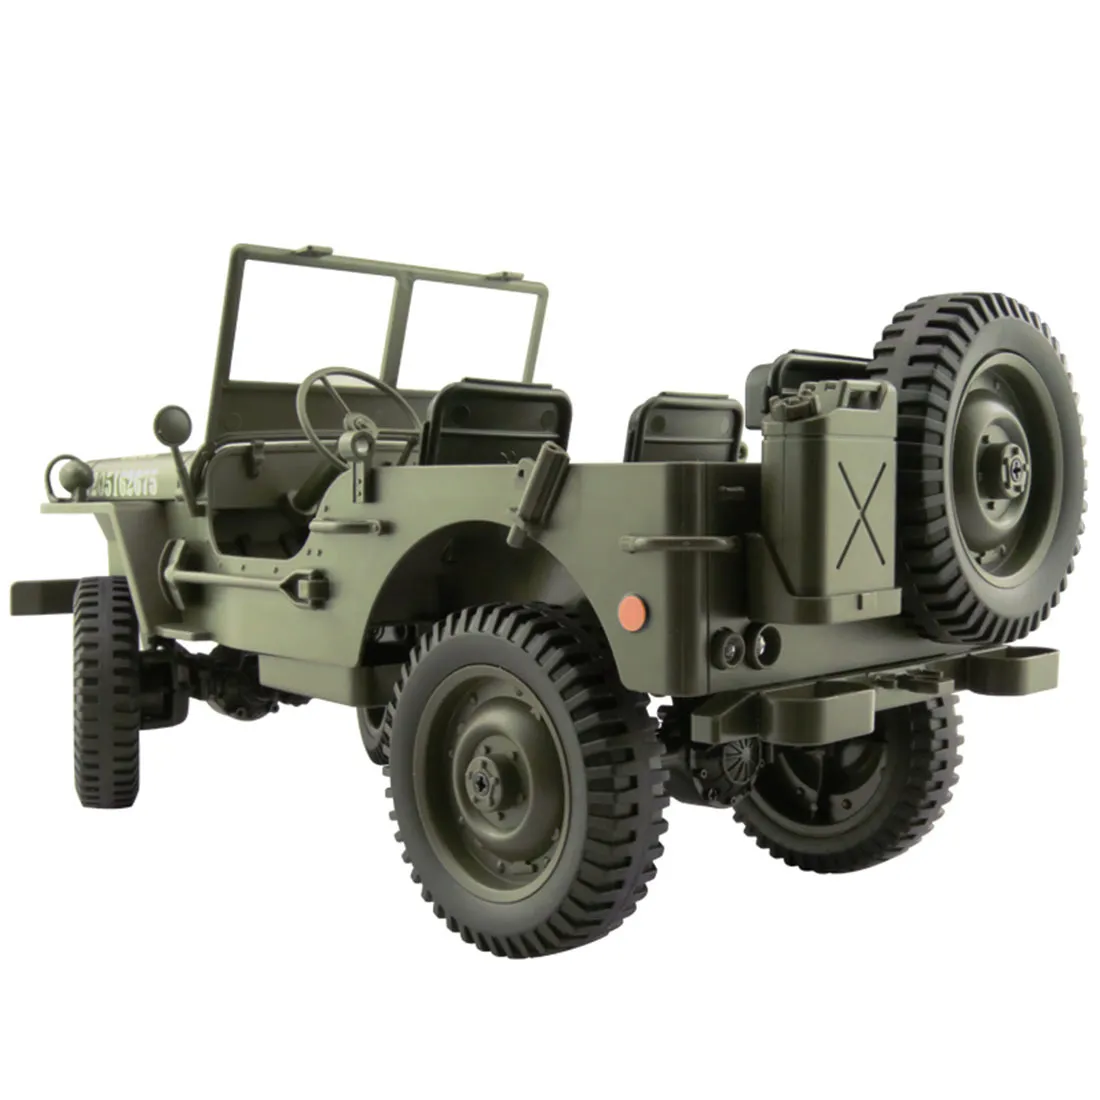 110 RC 24G Telecomando Jeep Simulazione FourWheel Drive OffRoad Militare Arrampicata Auto Diecast LED 4WD Veicolo Toys2568384